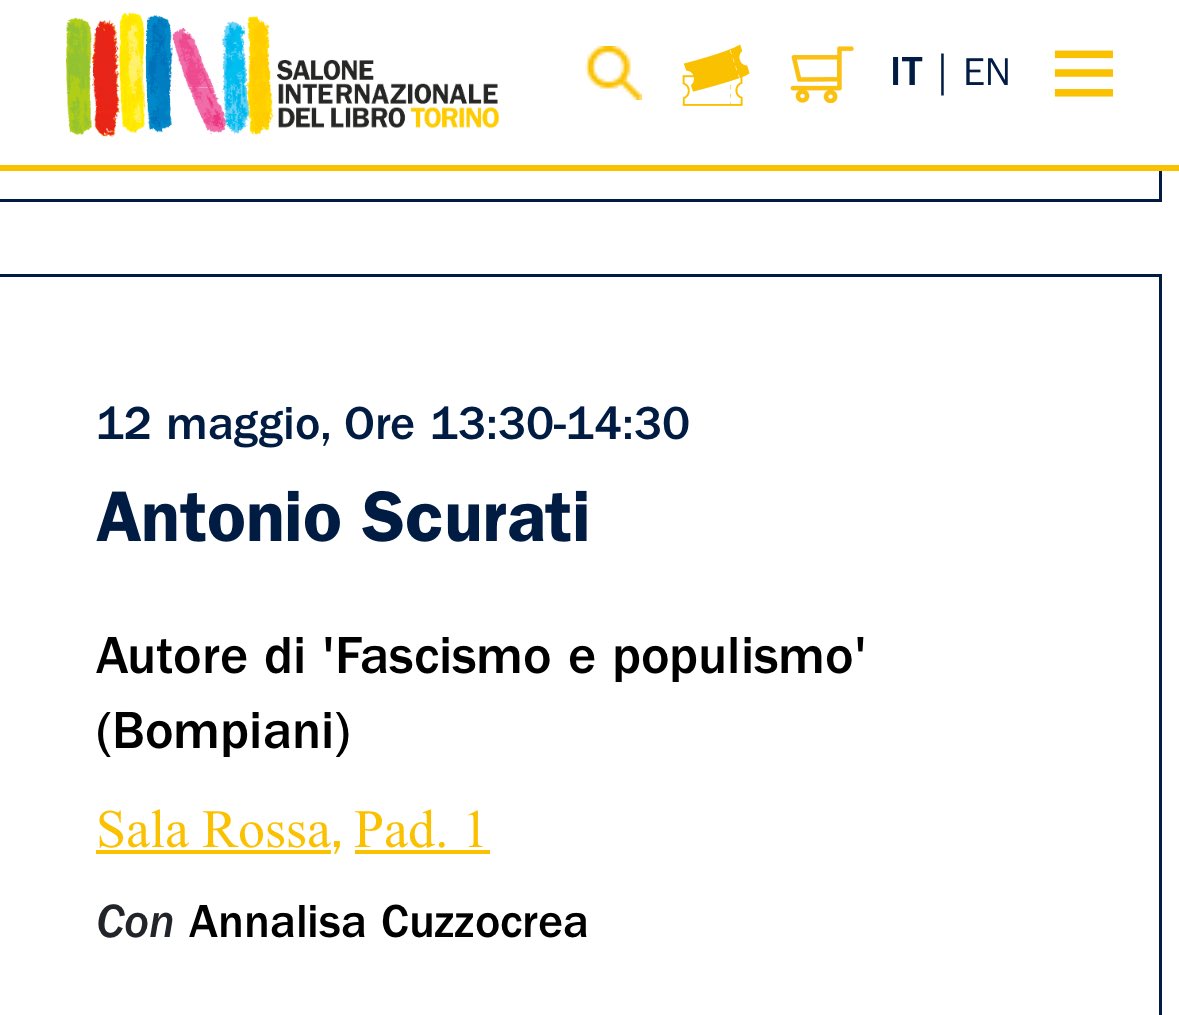 Ci vediamo al Salone del libro a Torino. Con Antonio Scurati su Fascismo e polulismo. Save the date.